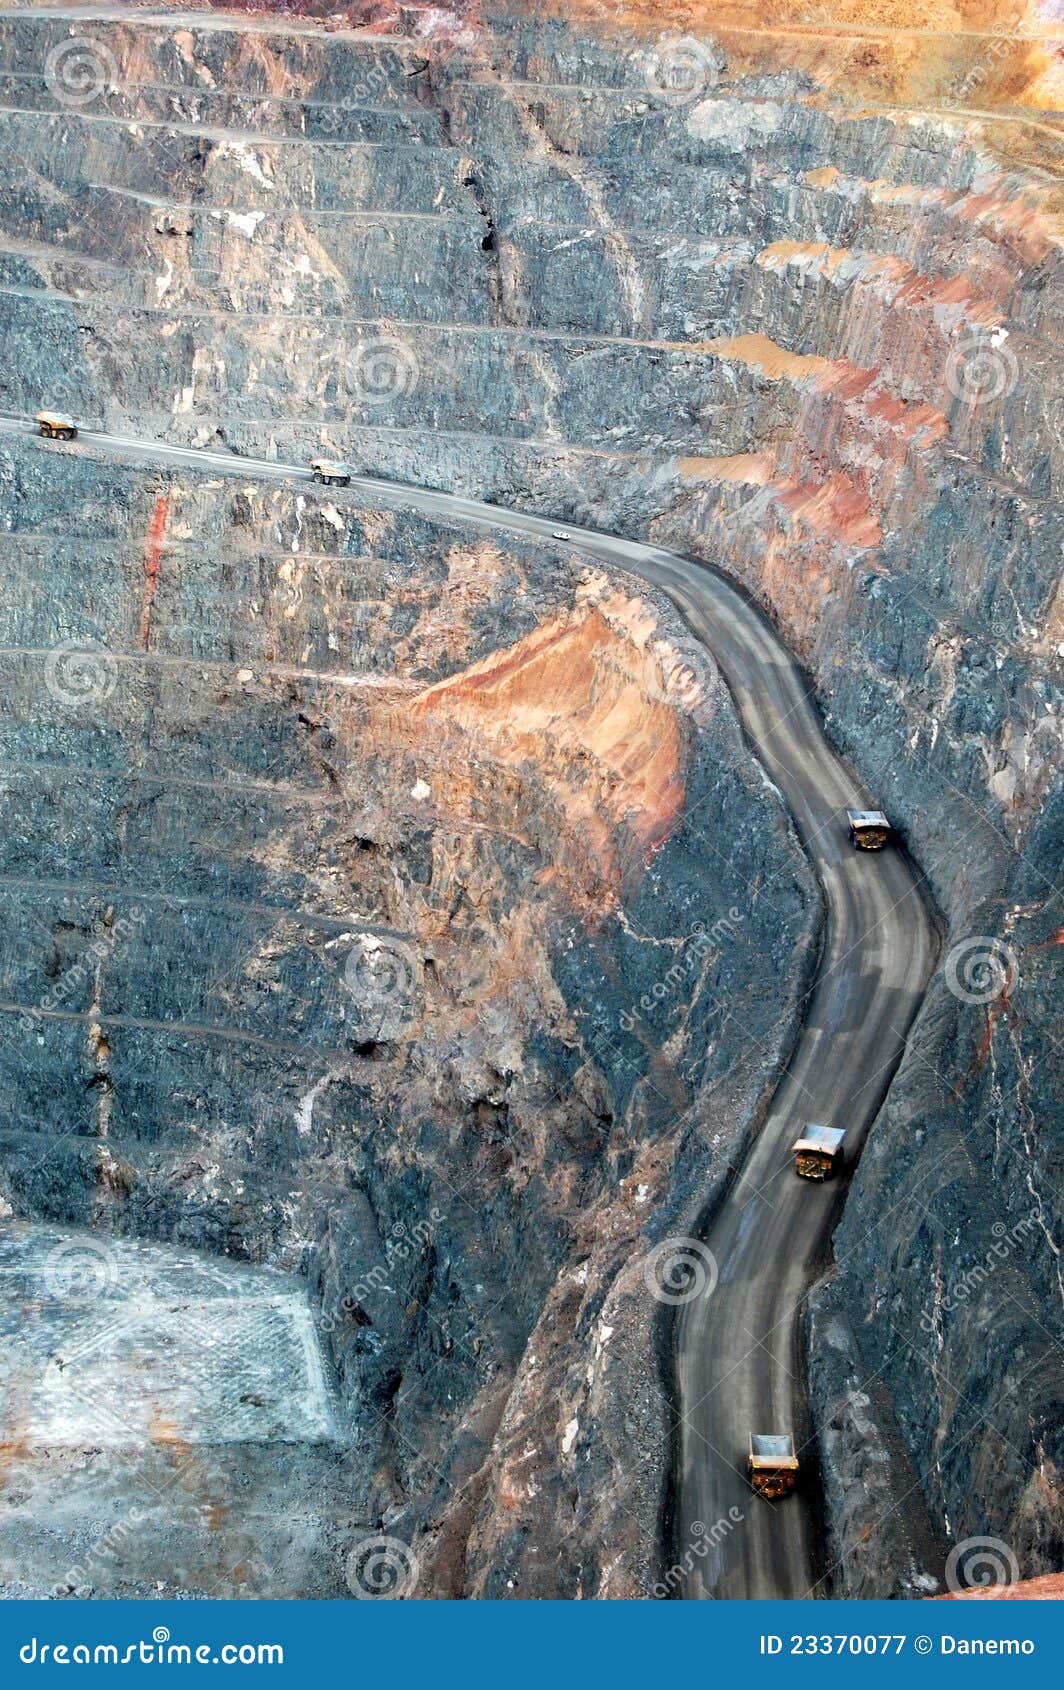 mining trucks at the gold mine